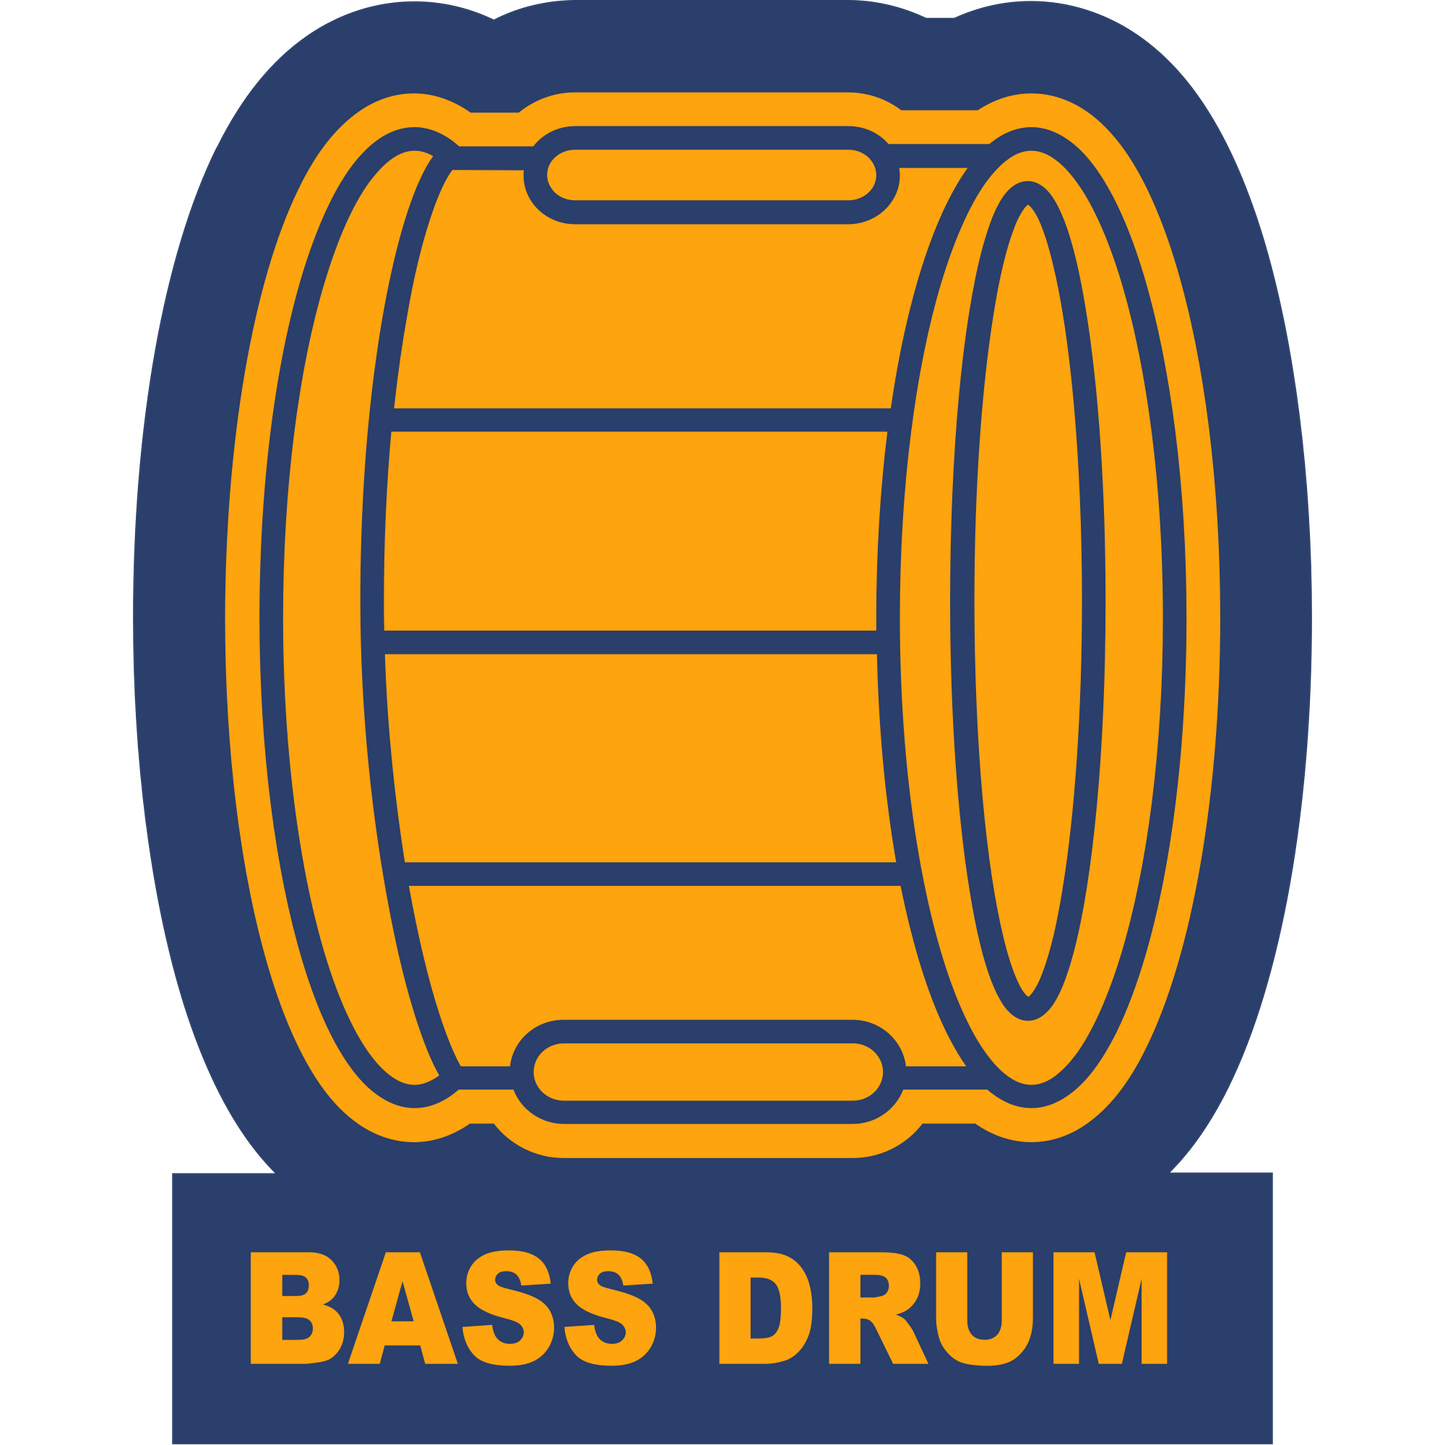 BSDRM - Bass Drum Sleeve Patch